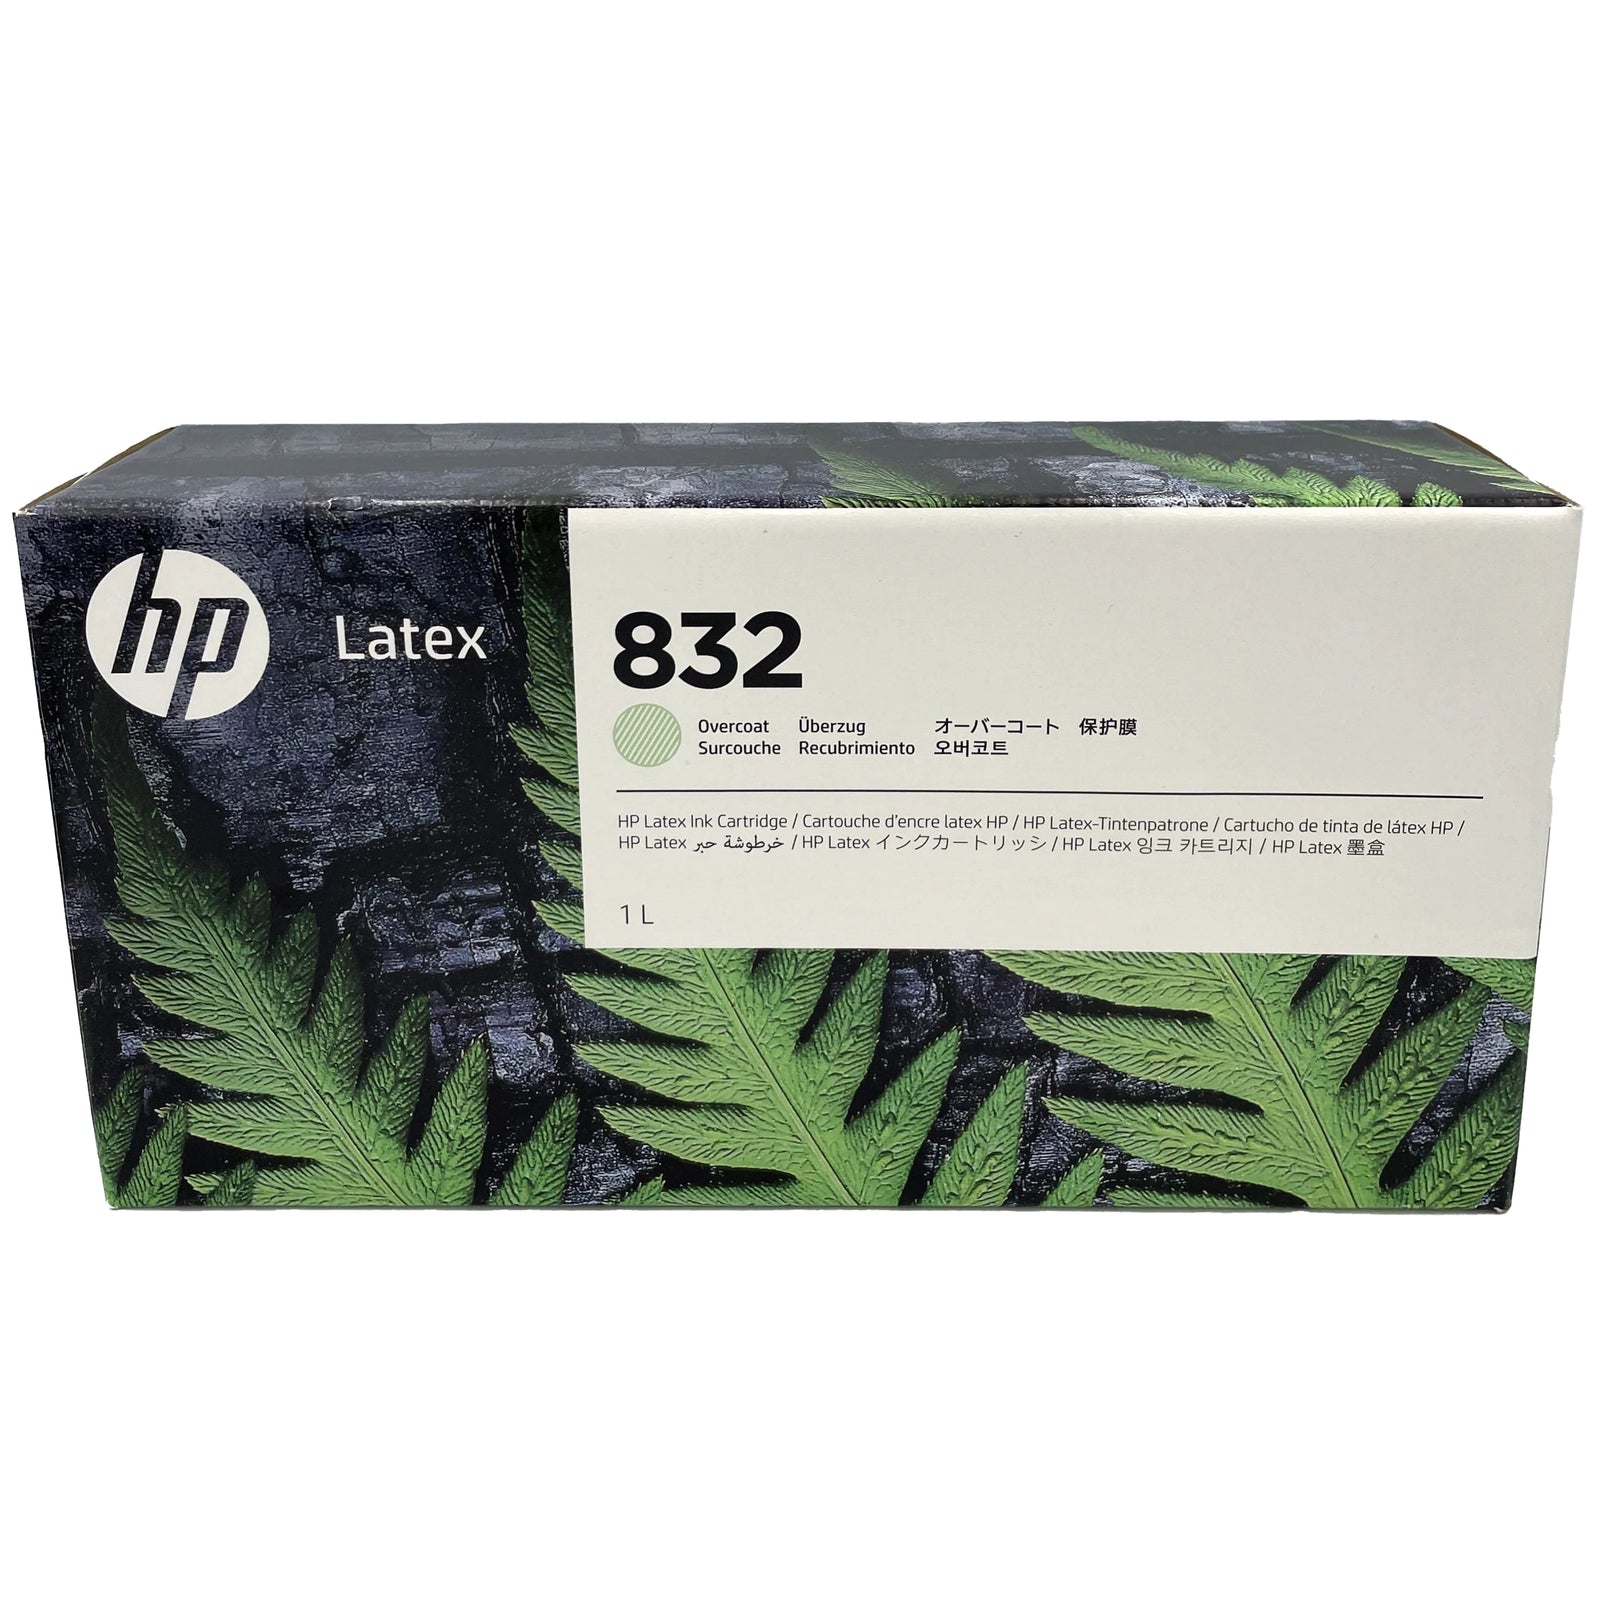 HP Latex Ink 832 - 1000ml